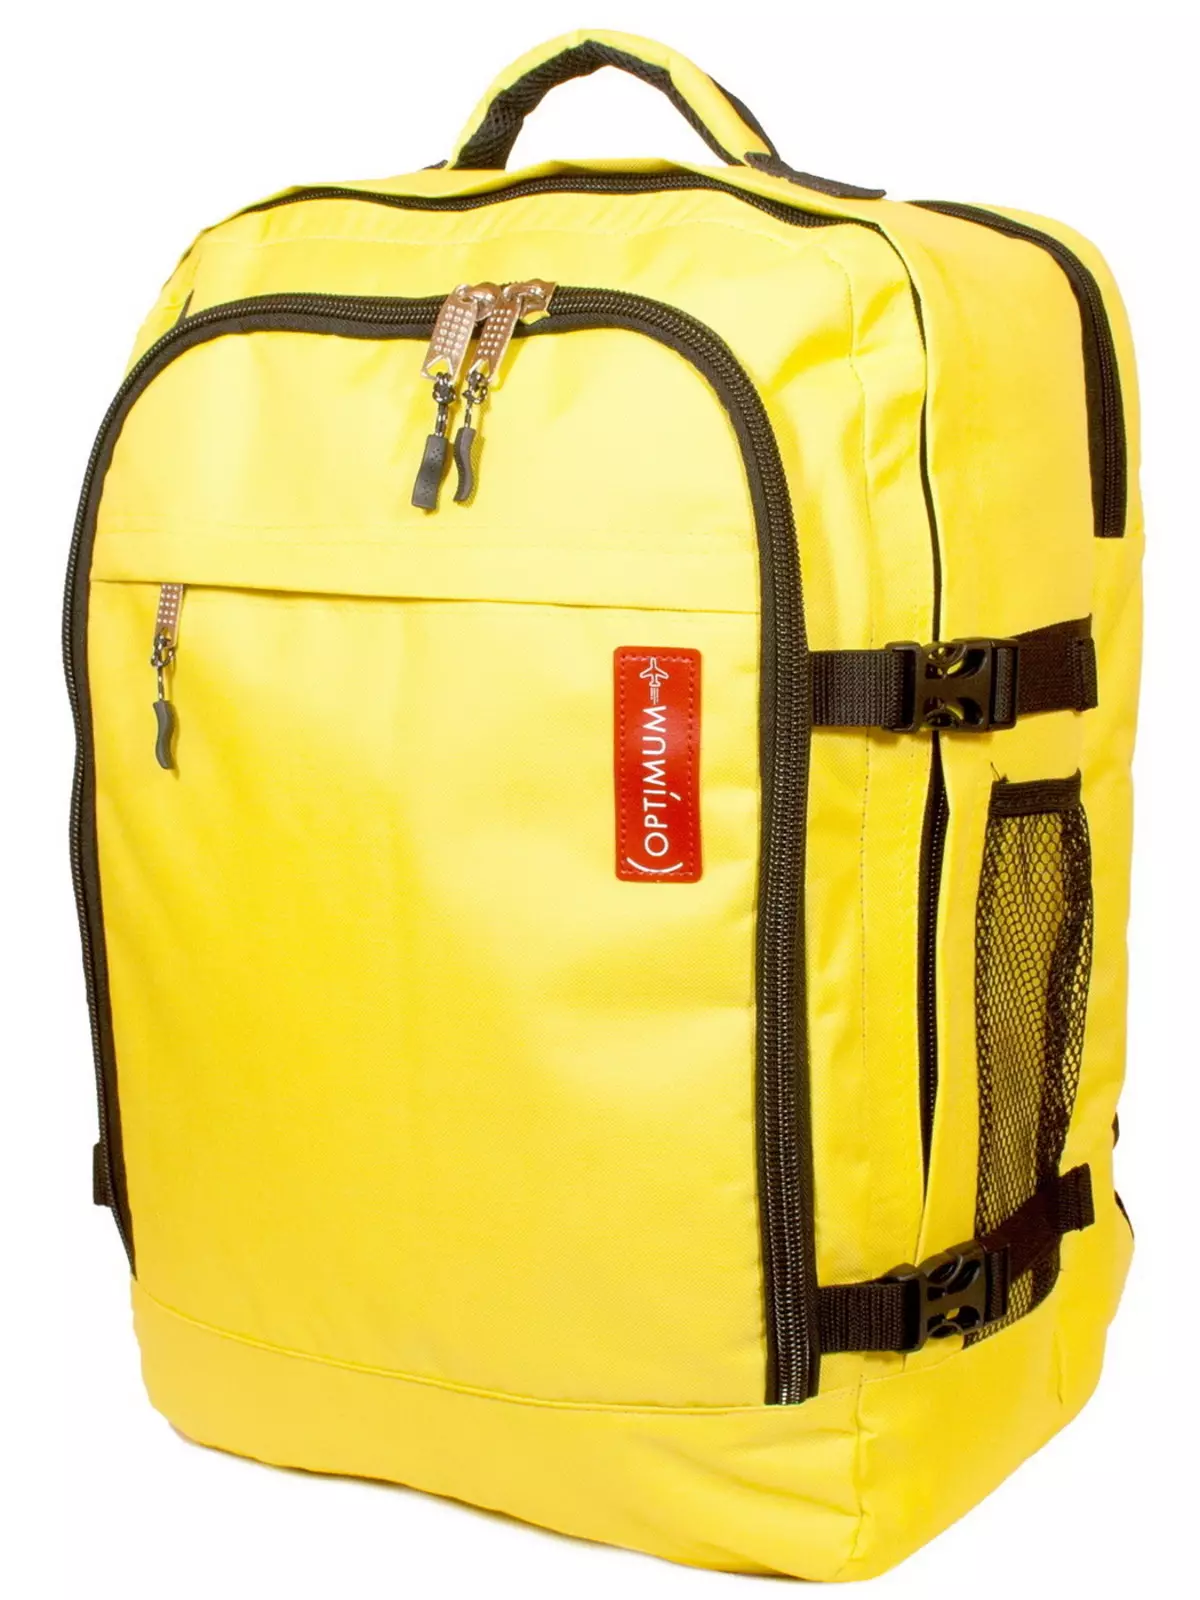 ხელის ჩანთა backpack: ითვლება backpack მოგზაურობის სახელმძღვანელო loop თვითმფრინავი? ზომები. რა შეიძლება დაიბადოს და რა უნდა გაიაროს ბარგის? 15346_13